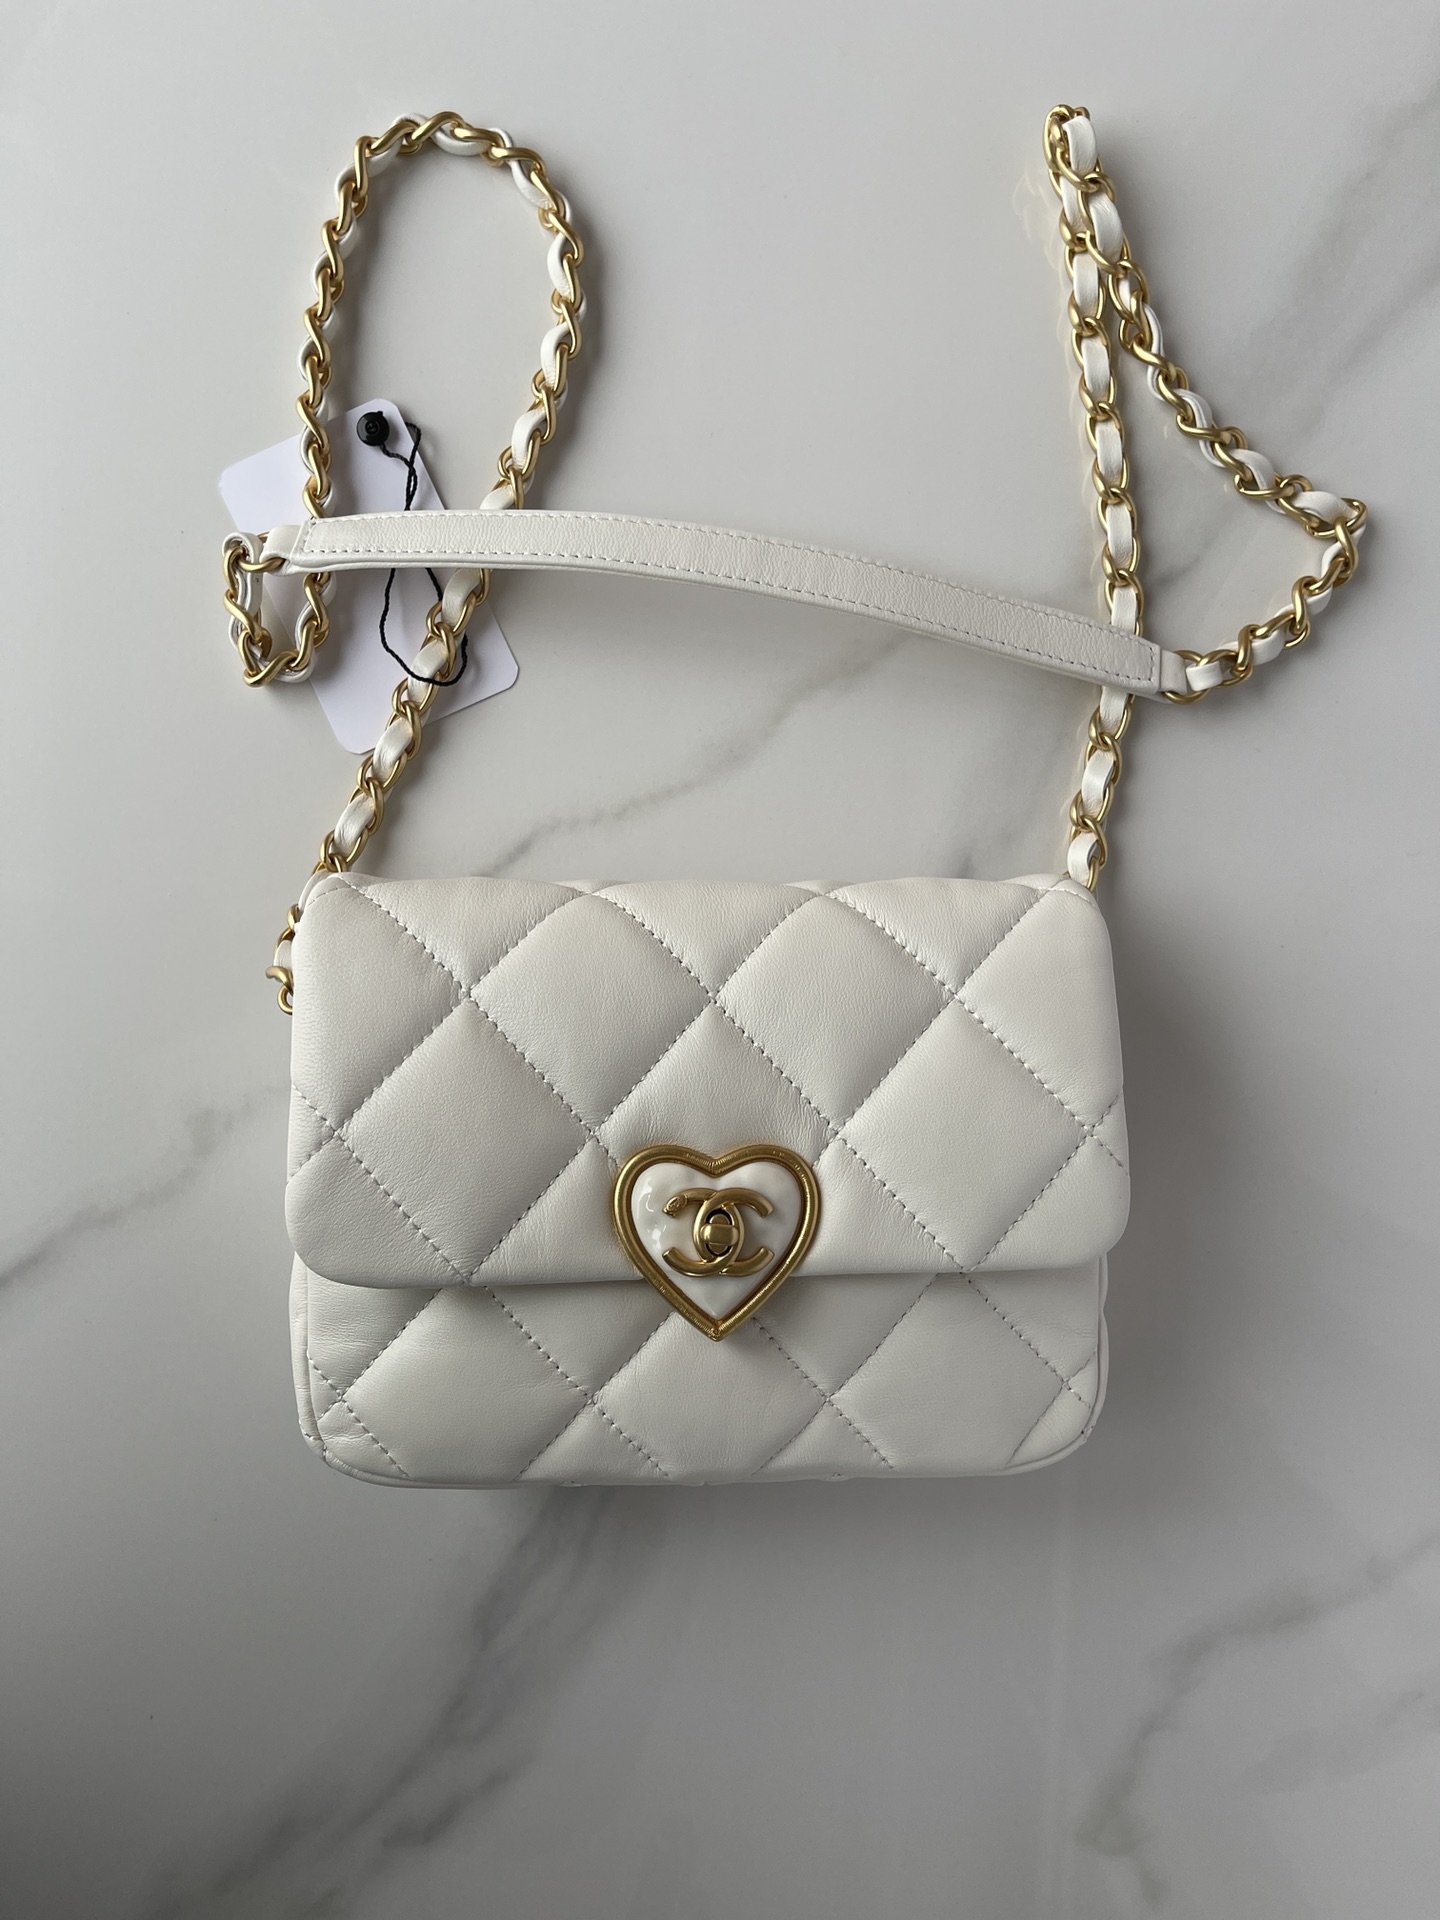 A bag Mini Flap Bag AS3979 18 cm, white фото 9